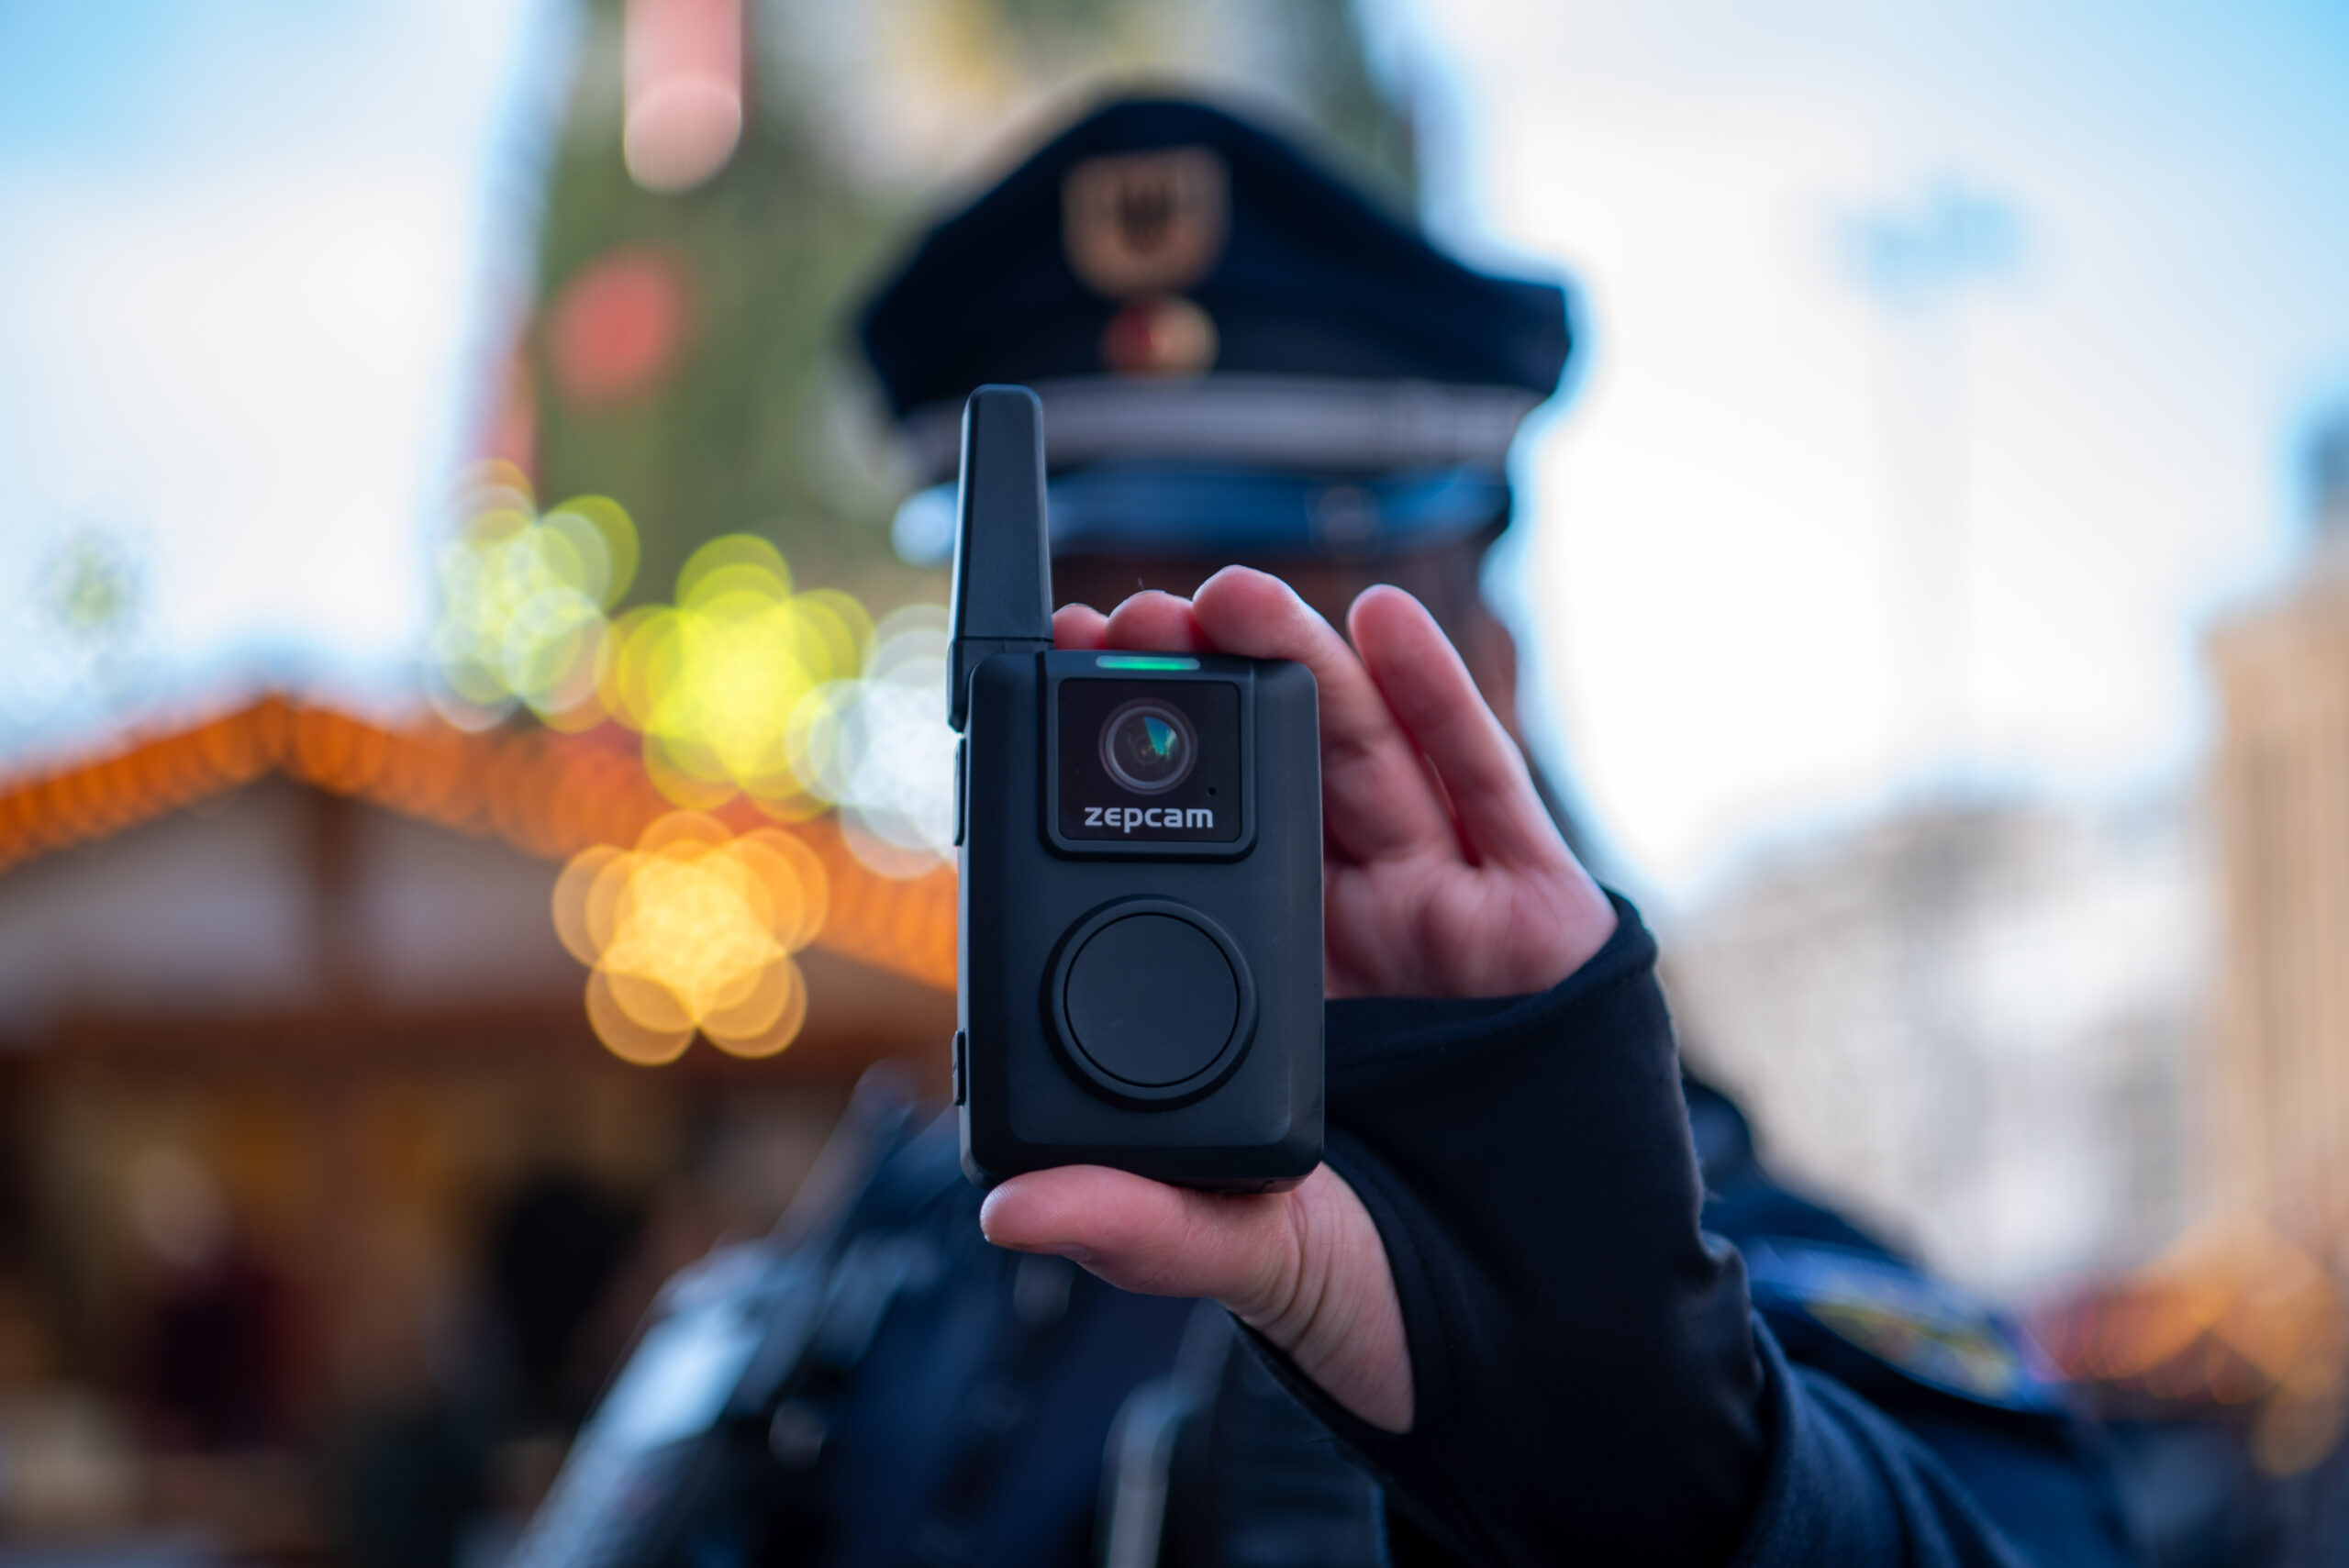 Immer mehr Respektlosigkeit und Gewalt: Dortmunds Ordnungsdienst setzt jetzt Bodycams ein